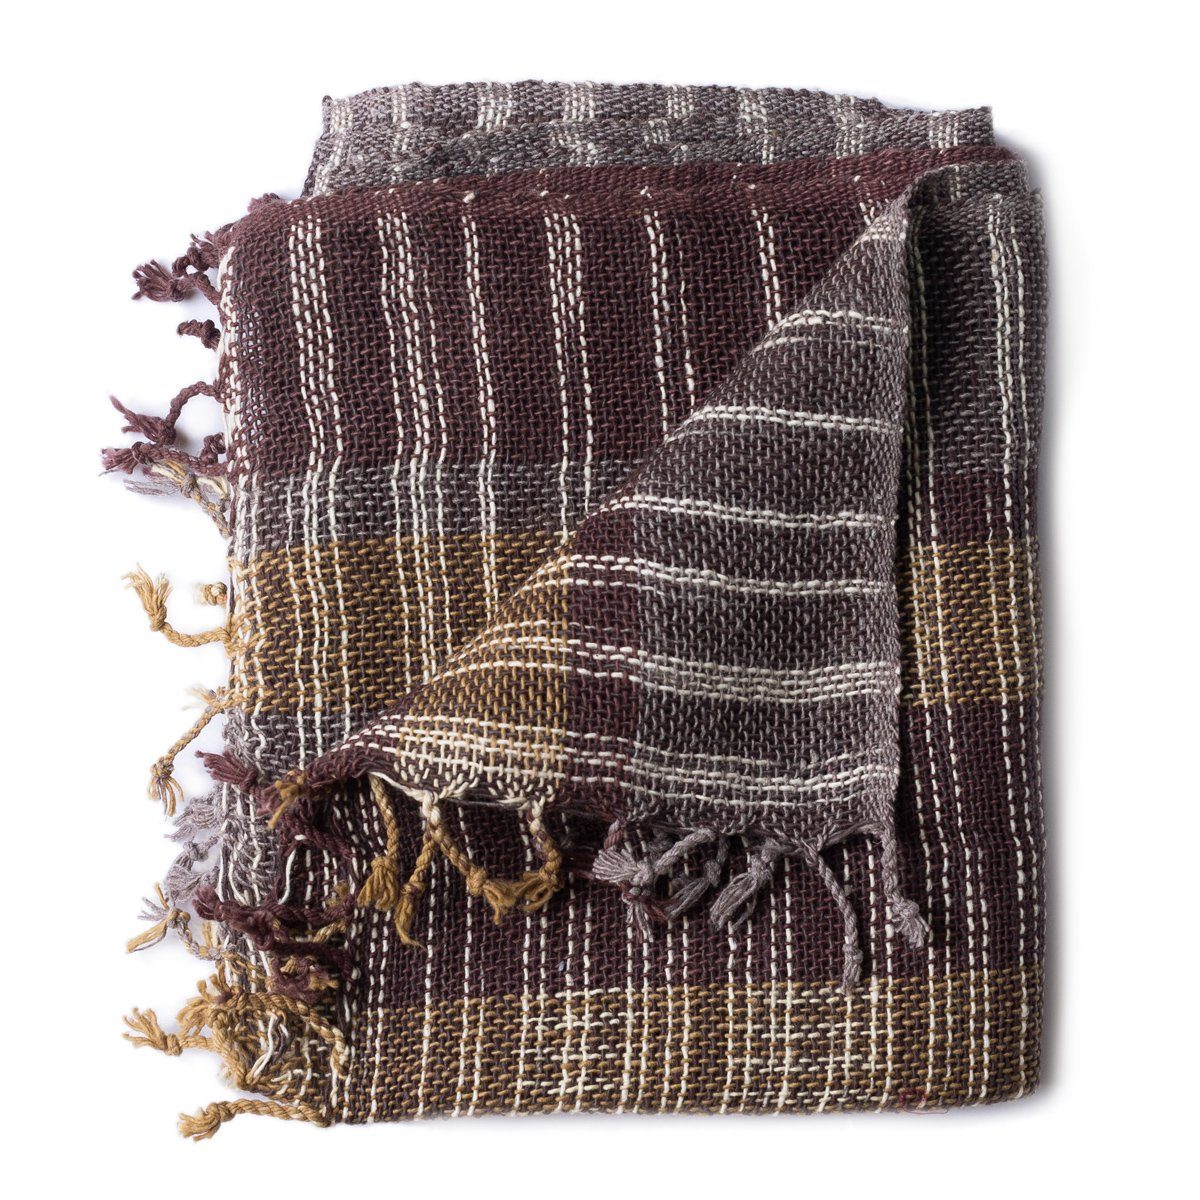 PANASIAM Halstuch warmer weicher Baumwollschal grob gewebt in verschiedenen Farben, auch als Schultertuch oder Schal im Herbst und Winter tragbar dunkelbraun